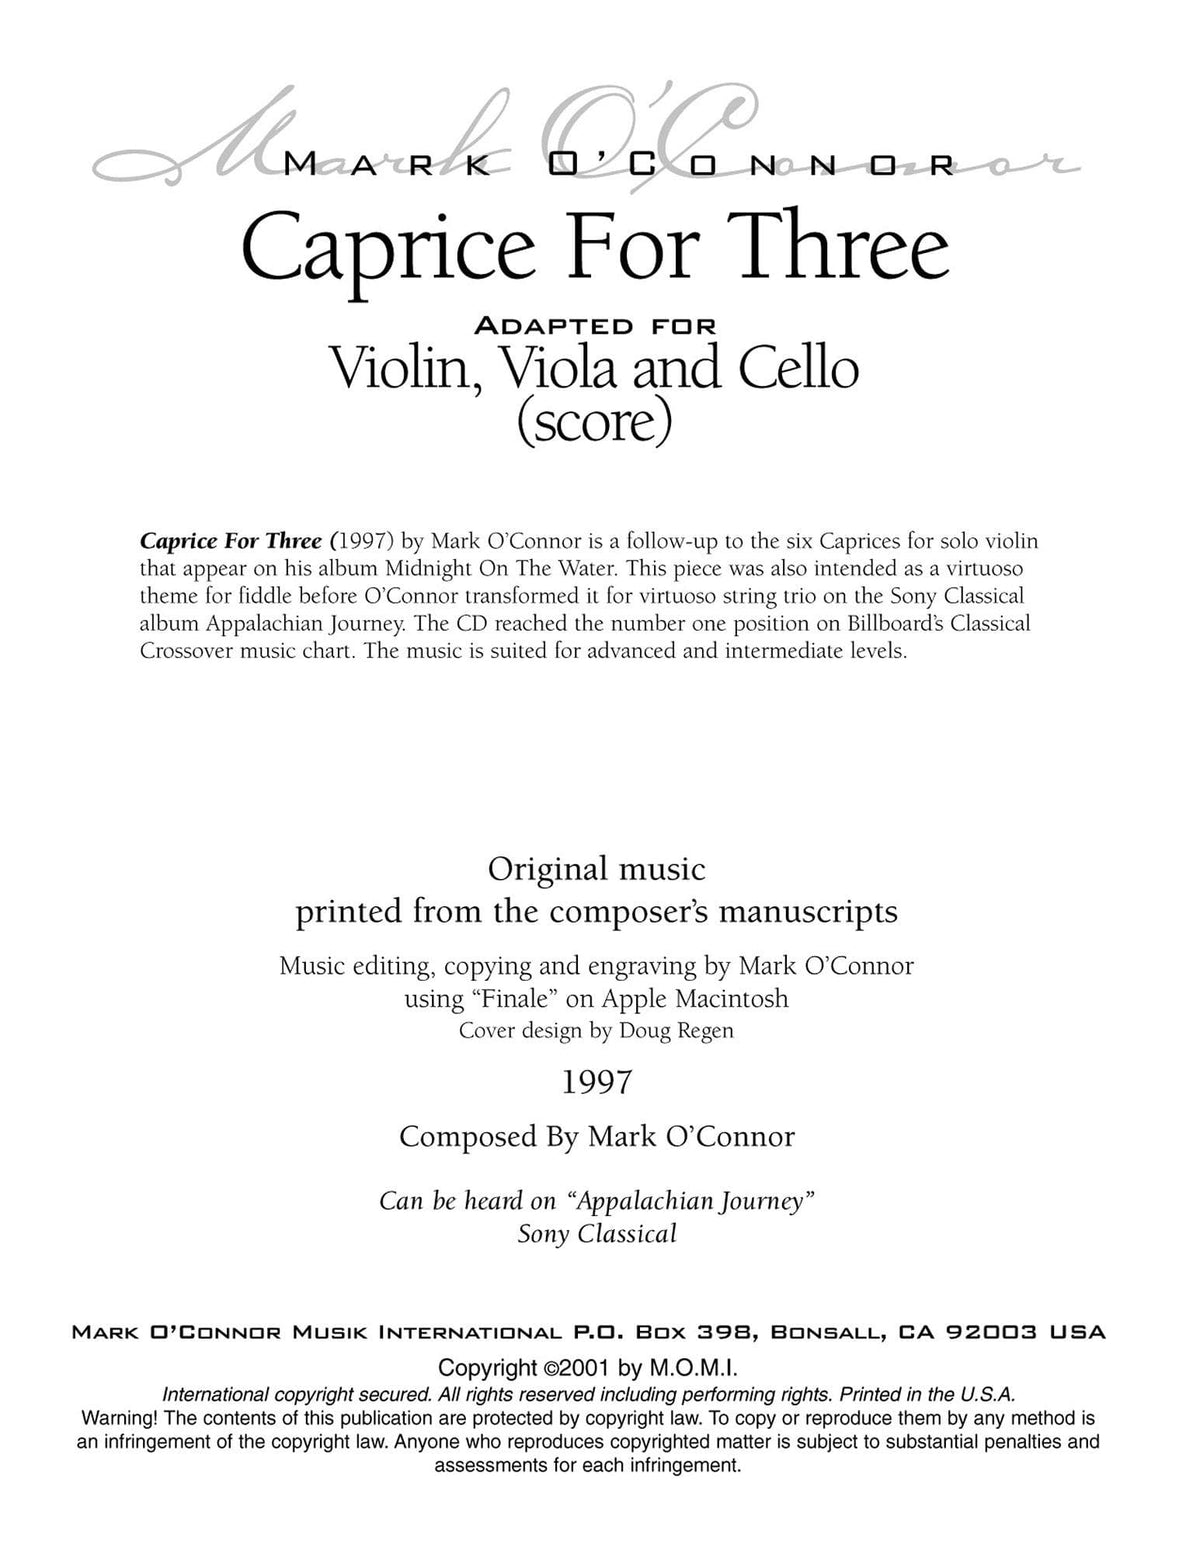 O'Connor, Mark - Caprice for Three for Violin, Viola, and Cello - Score - Digital Download